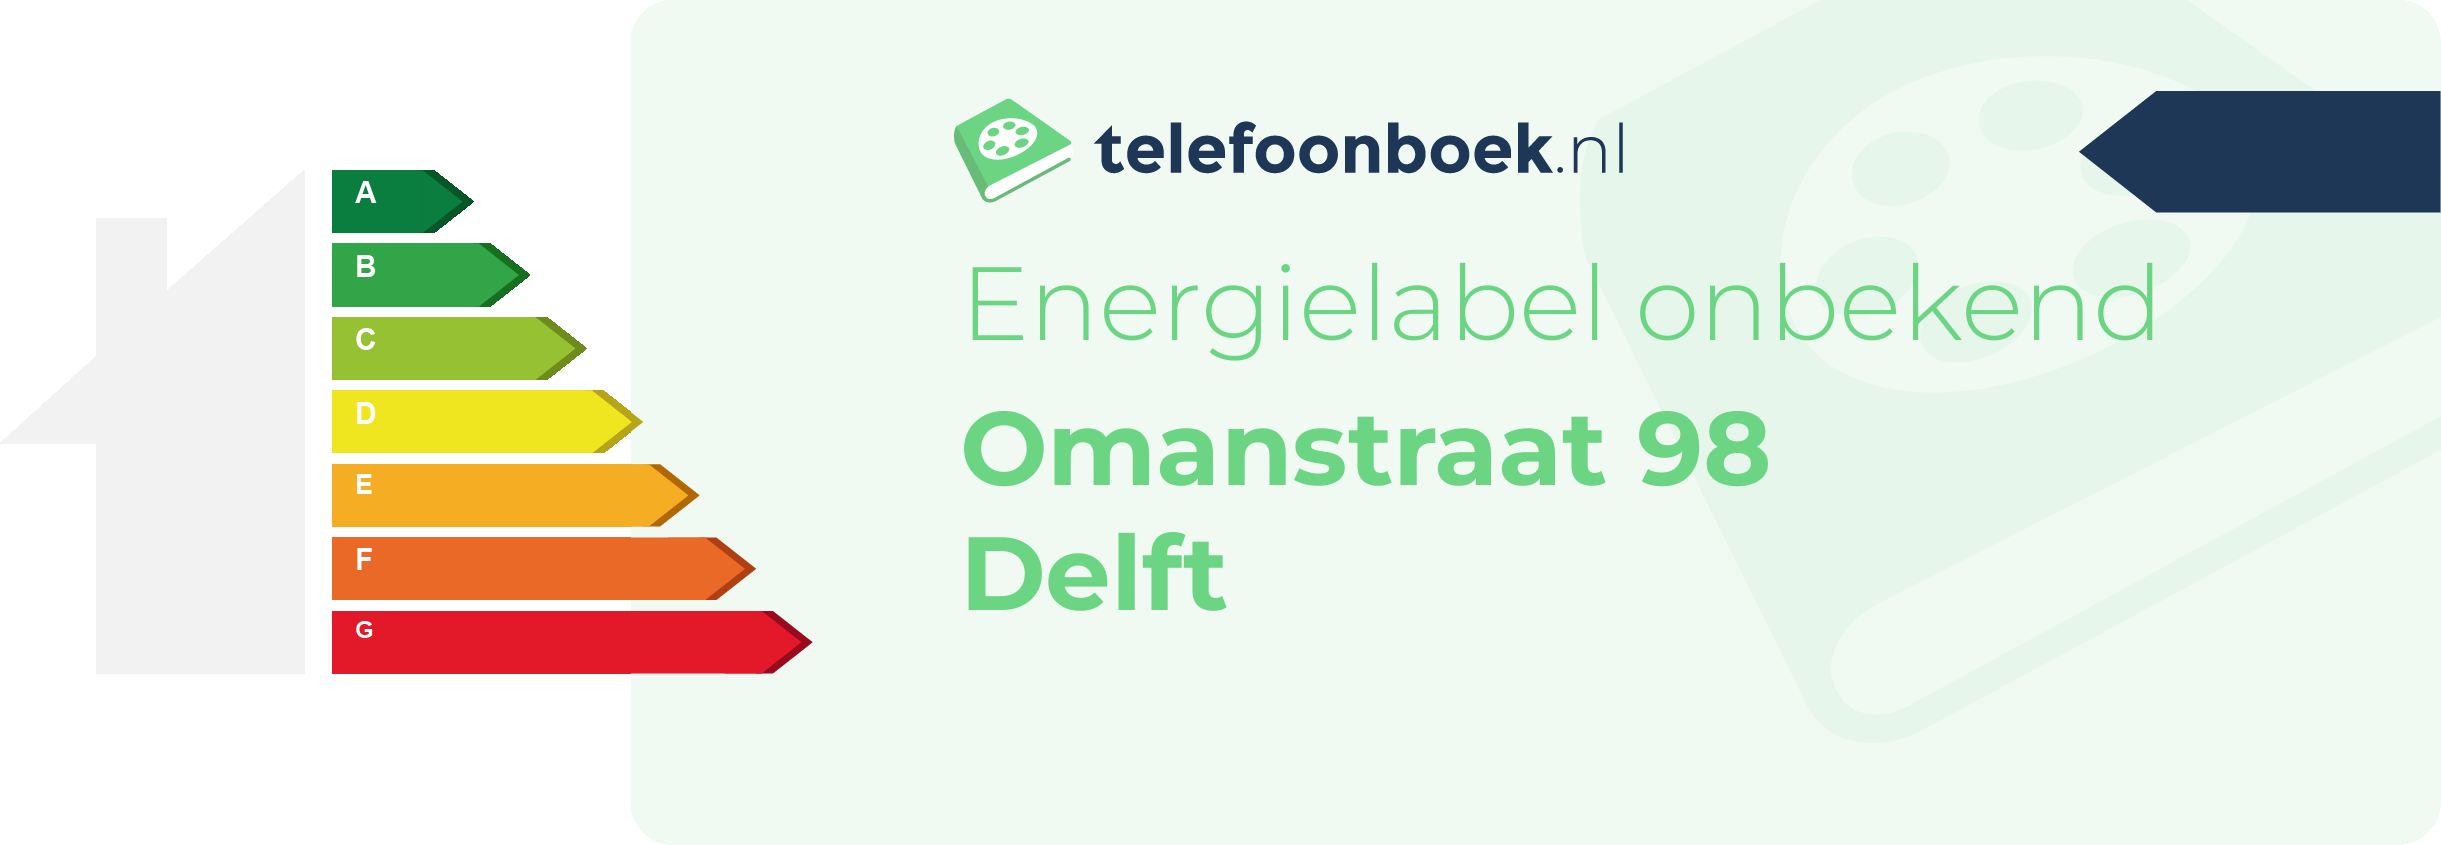 Energielabel Omanstraat 98 Delft